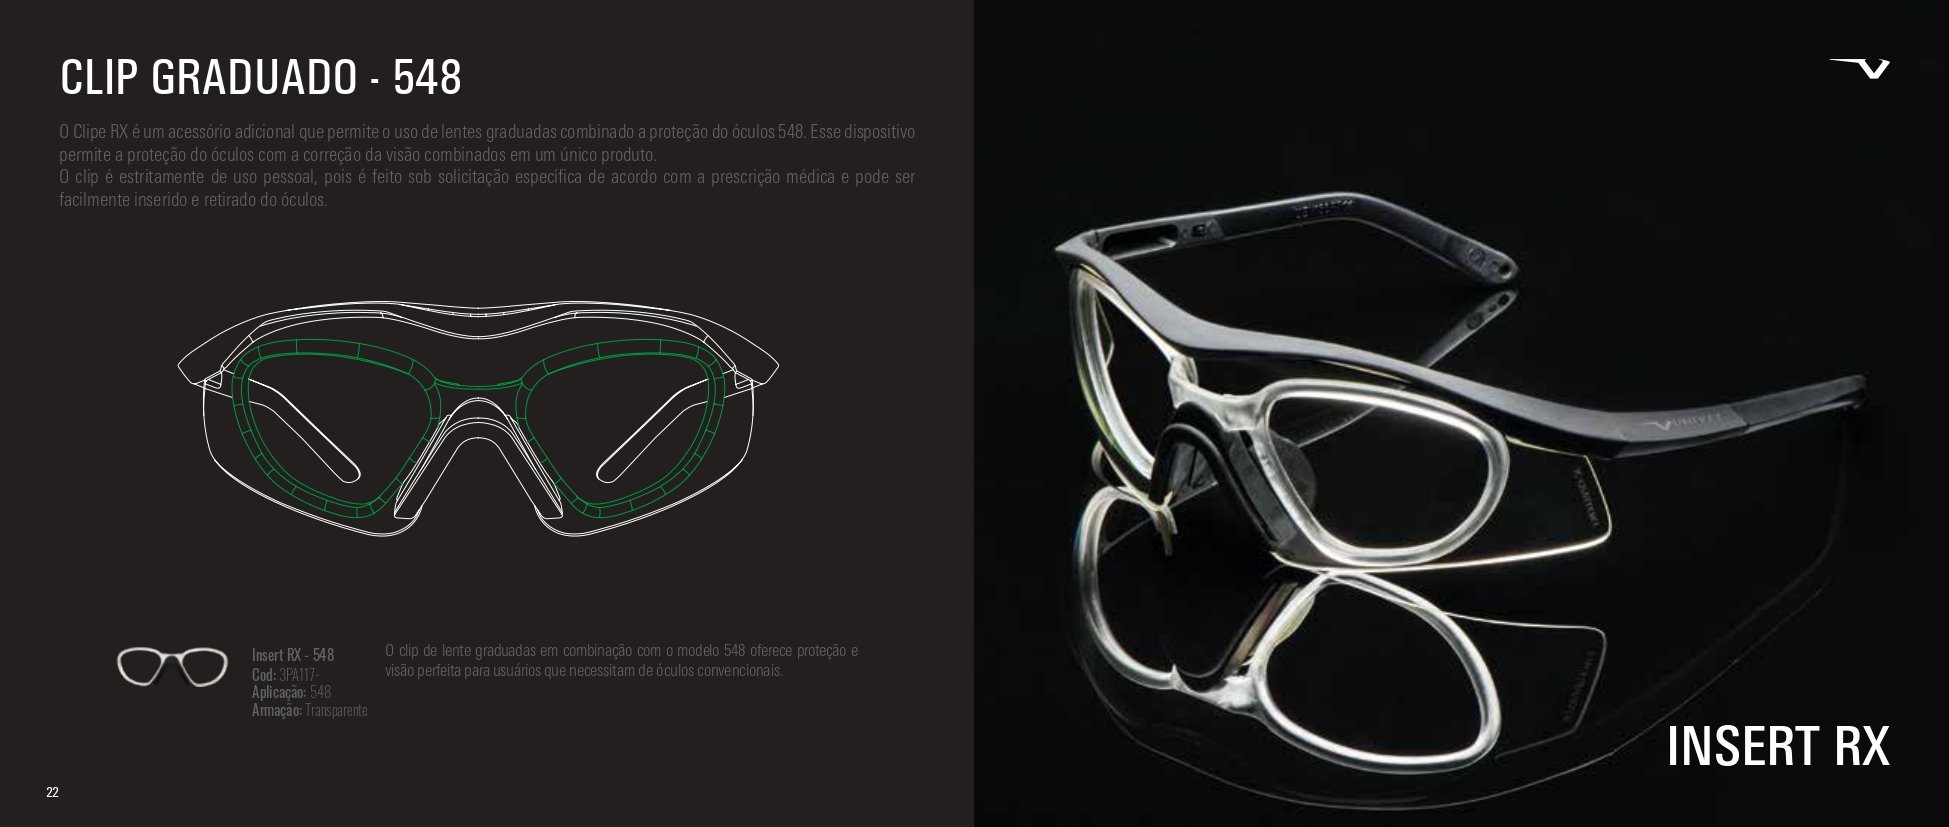 Óculos Proteção Com Clipe Univet 548 Balistico Testado a 720km/h - 9